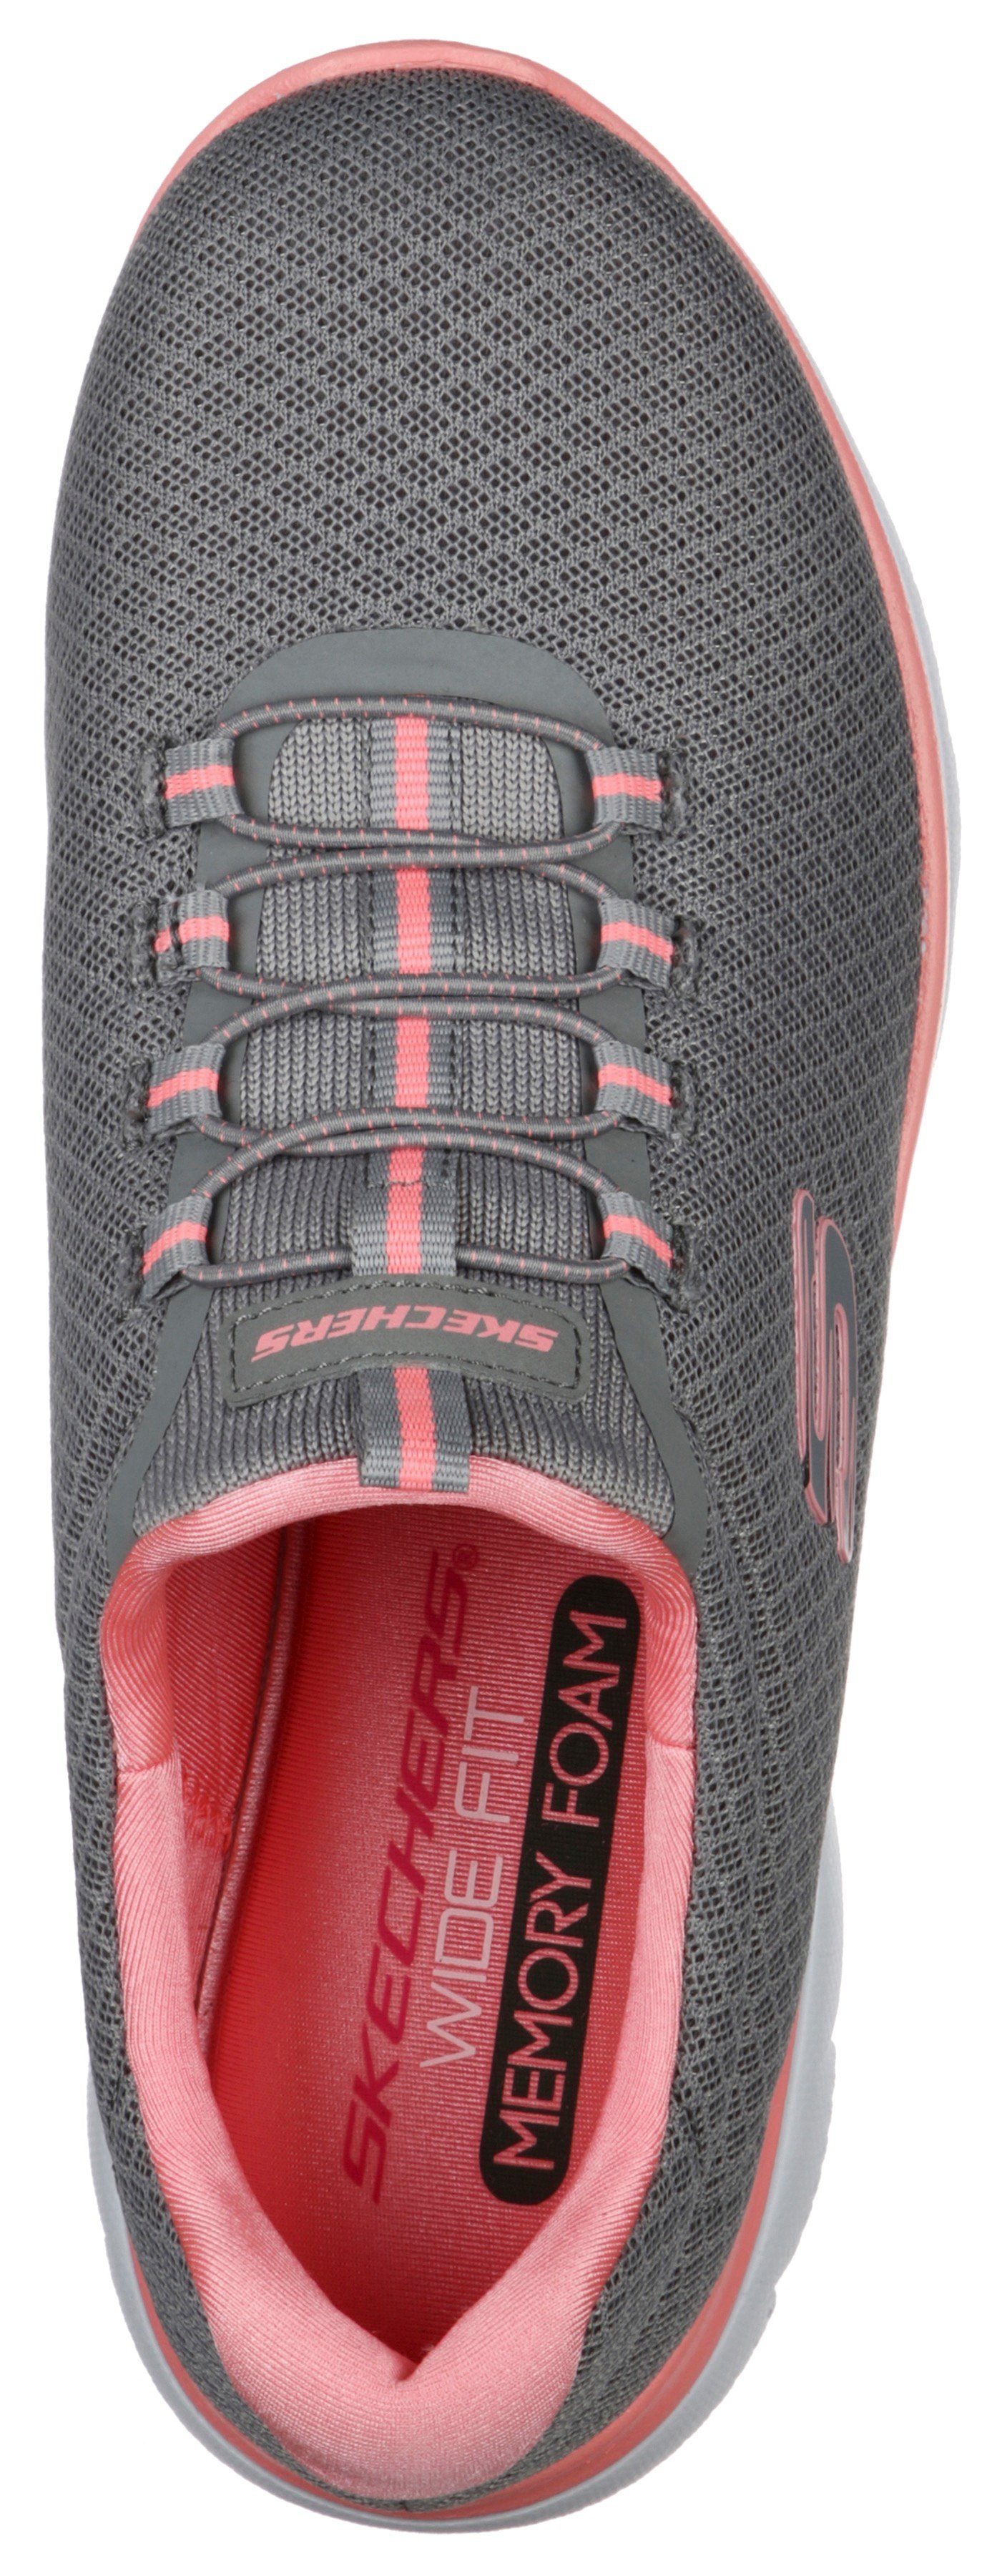 grau-rosa mit SUMMITS dezenten Sneaker Slip-On Skechers Kontrast-Details